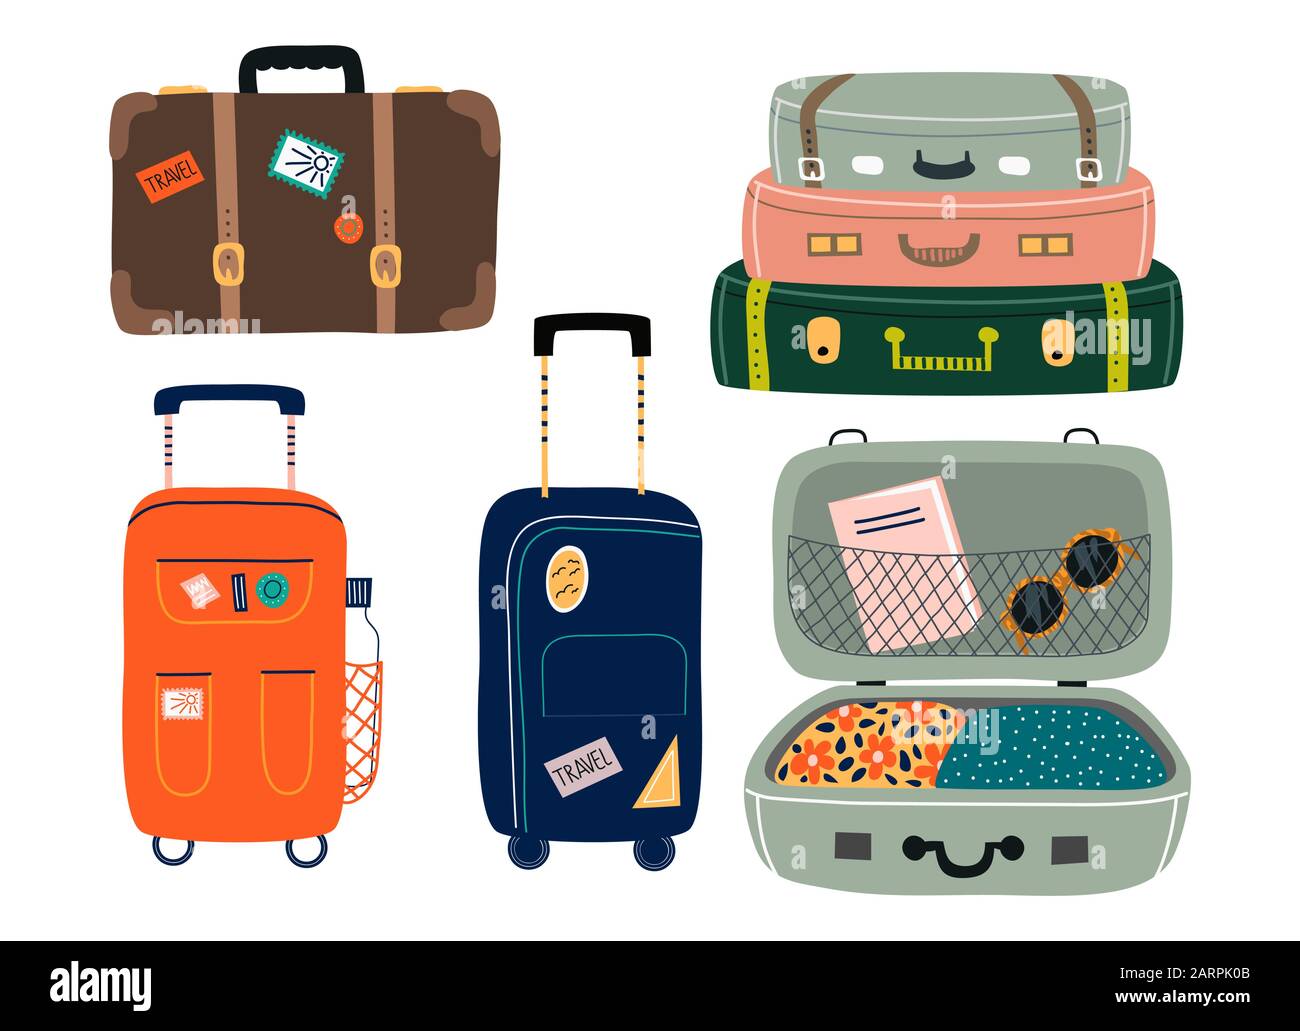 Maletas de viaje. mochilas, bolsas, maleta plástica o abierta con ruedas.  equipaje turístico de dibujos animados con etiqueta. conjunto de vector de  equipaje de mano. equipaje y equipaje para viajar, maleta y